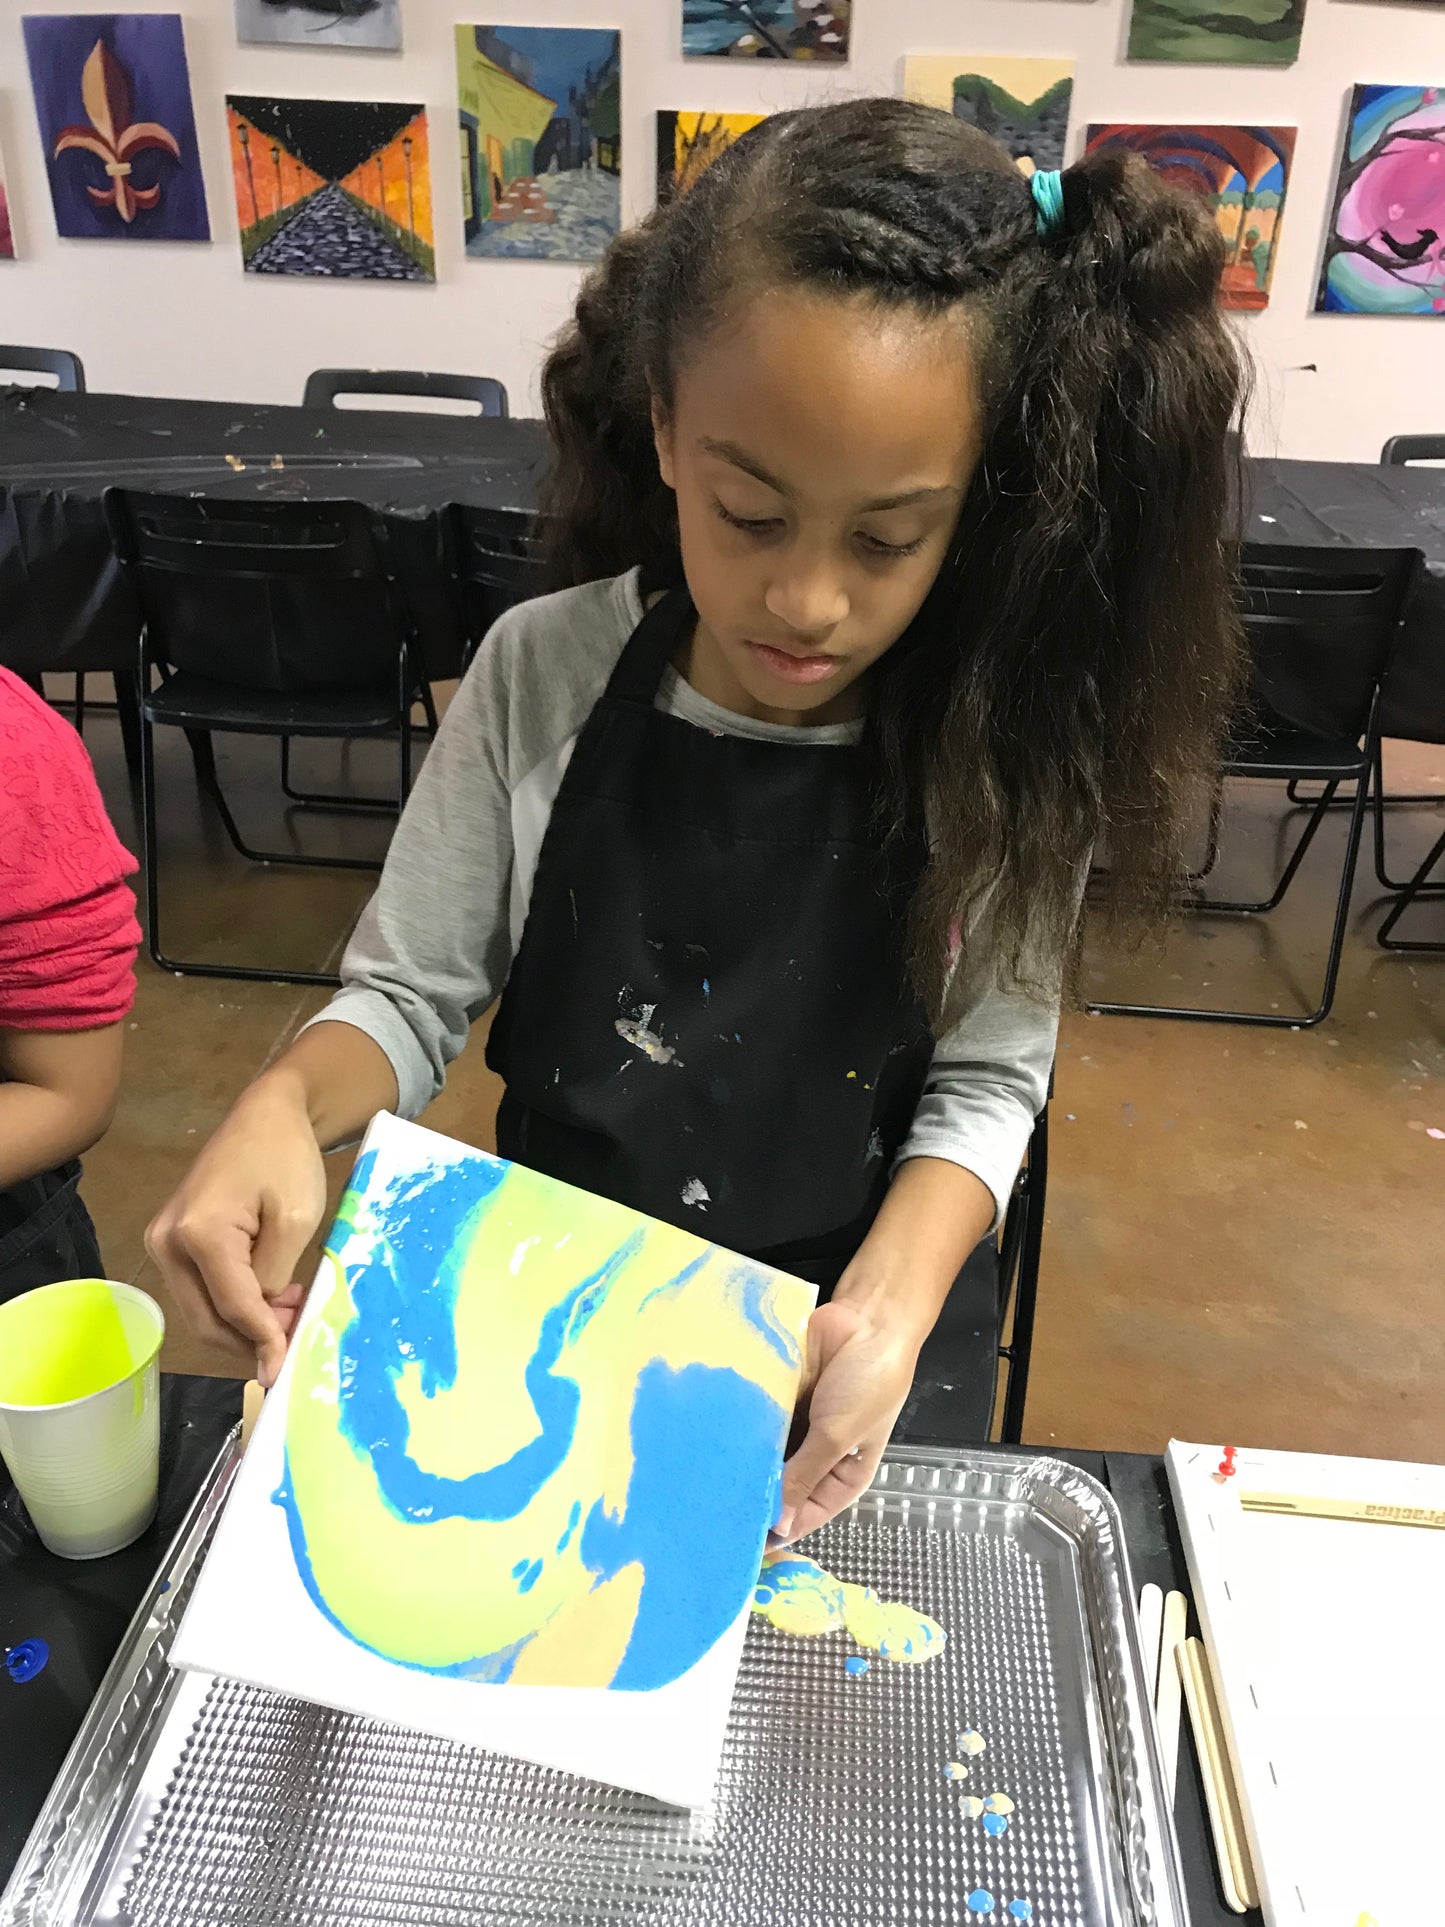 Wed, Mar 24, 4-6p Kids Paint: Acrylic Pour Houston Public Painting Class